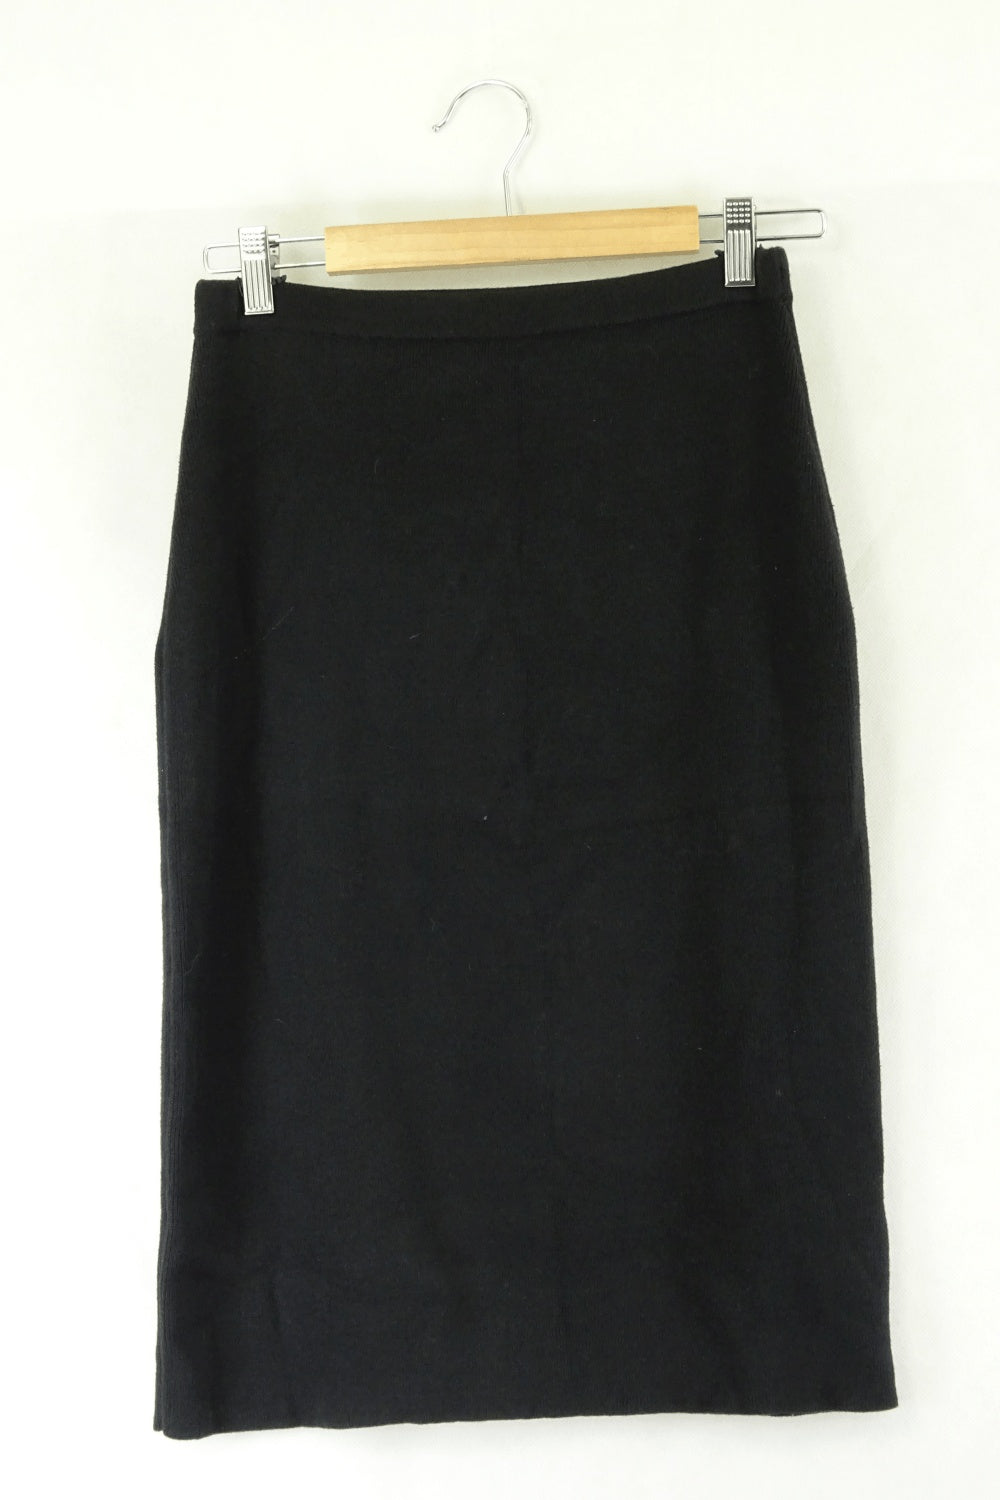 Bul Black Skirt 10